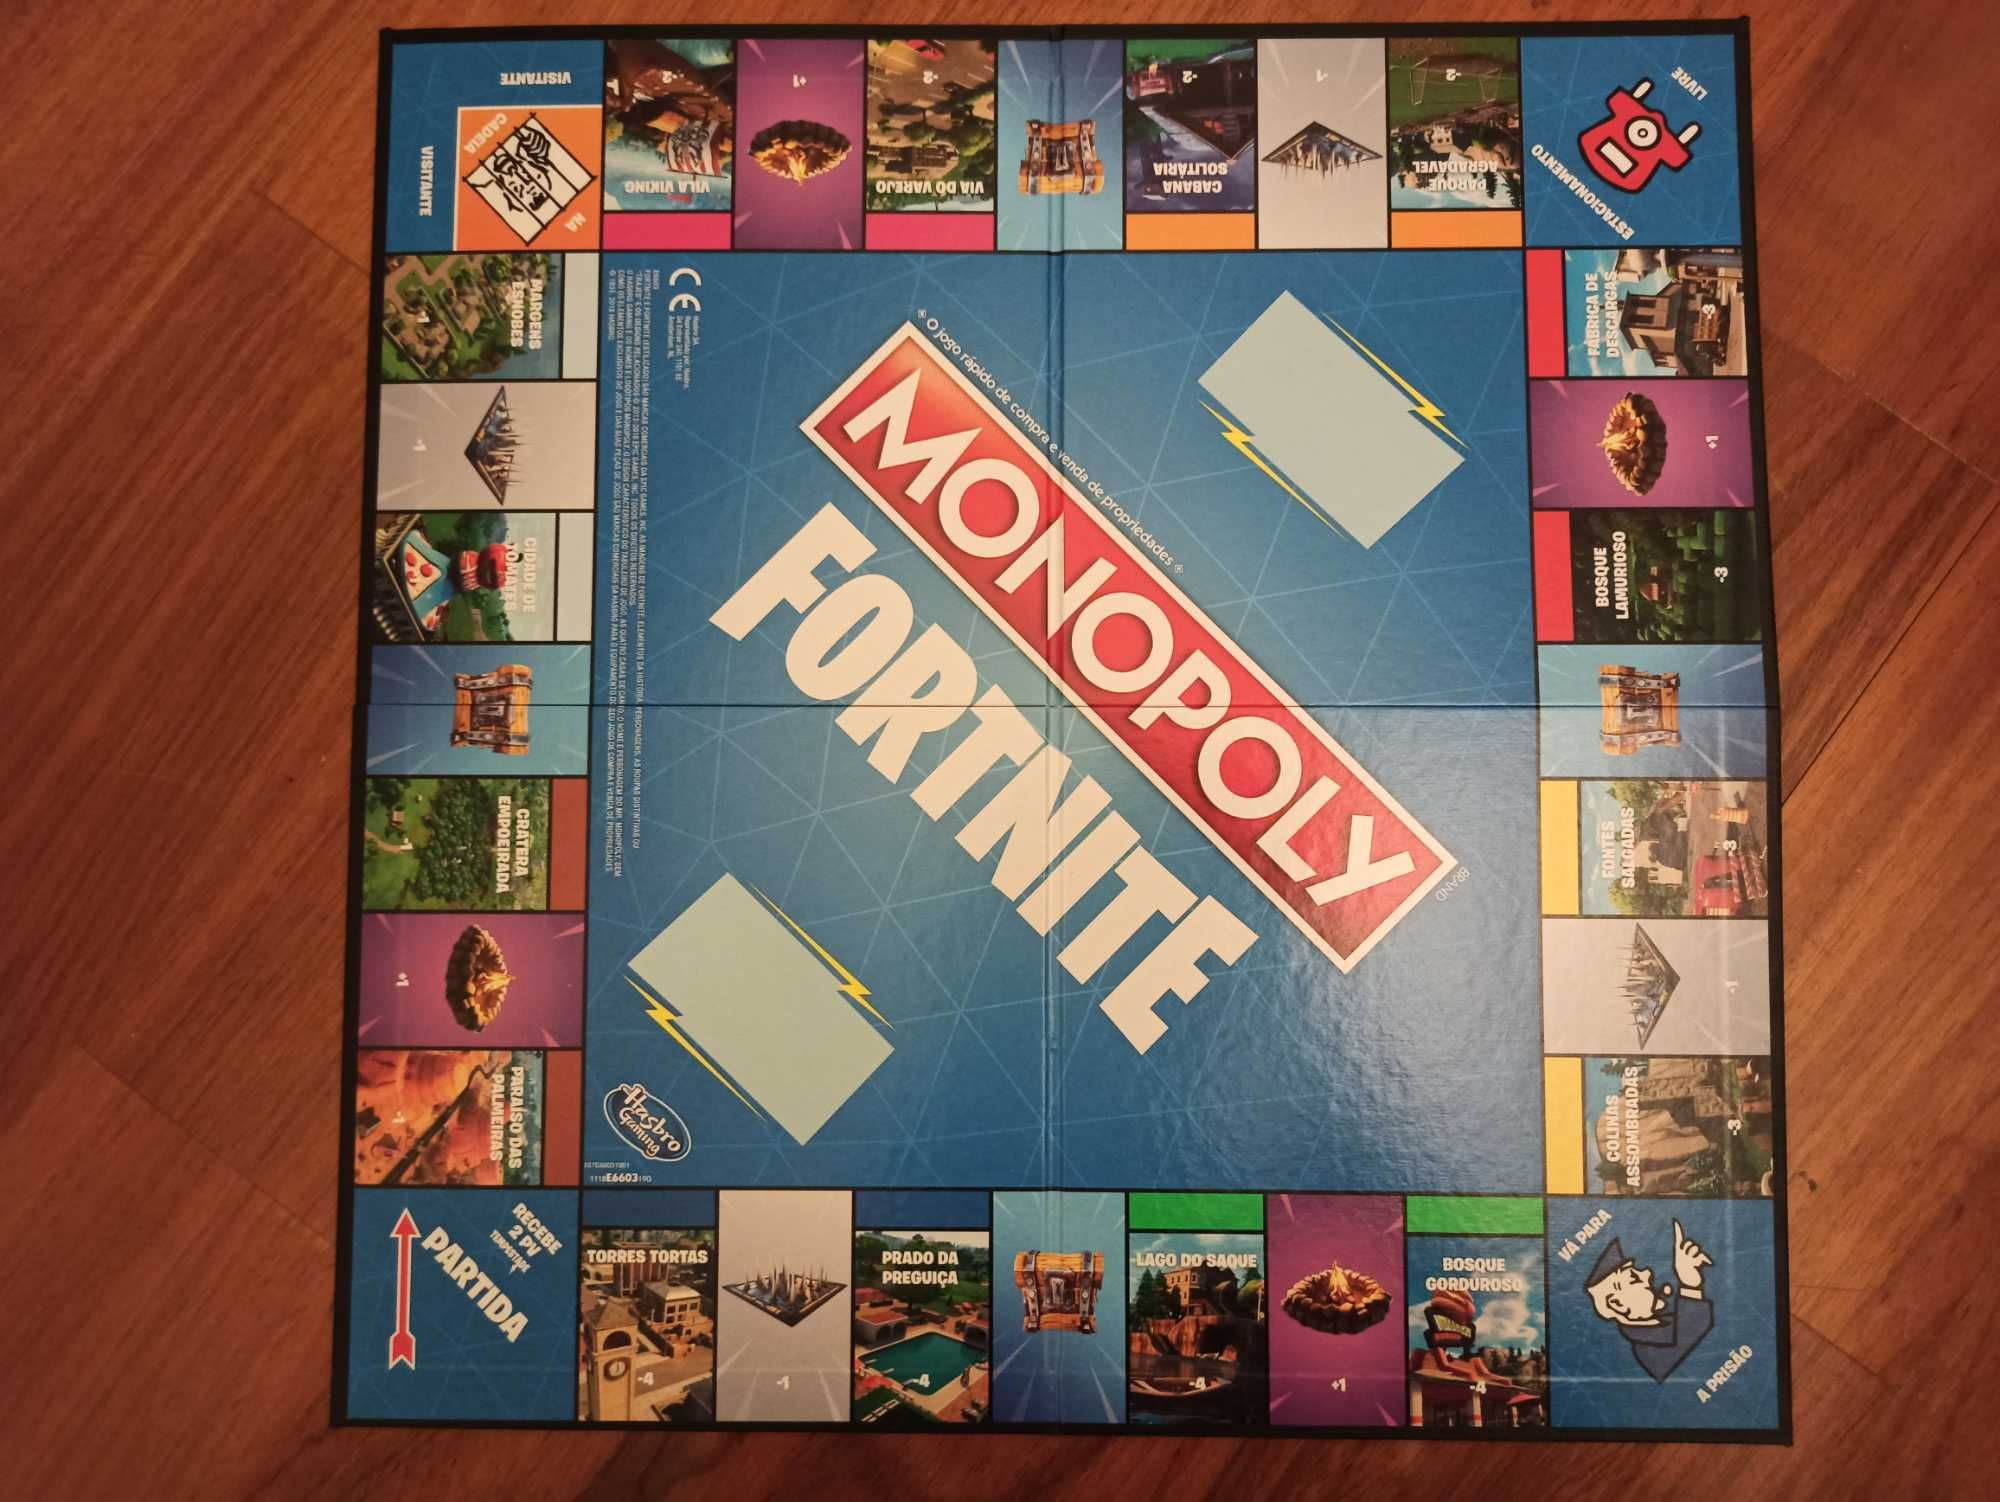 Monopoly Fortnite- como novo